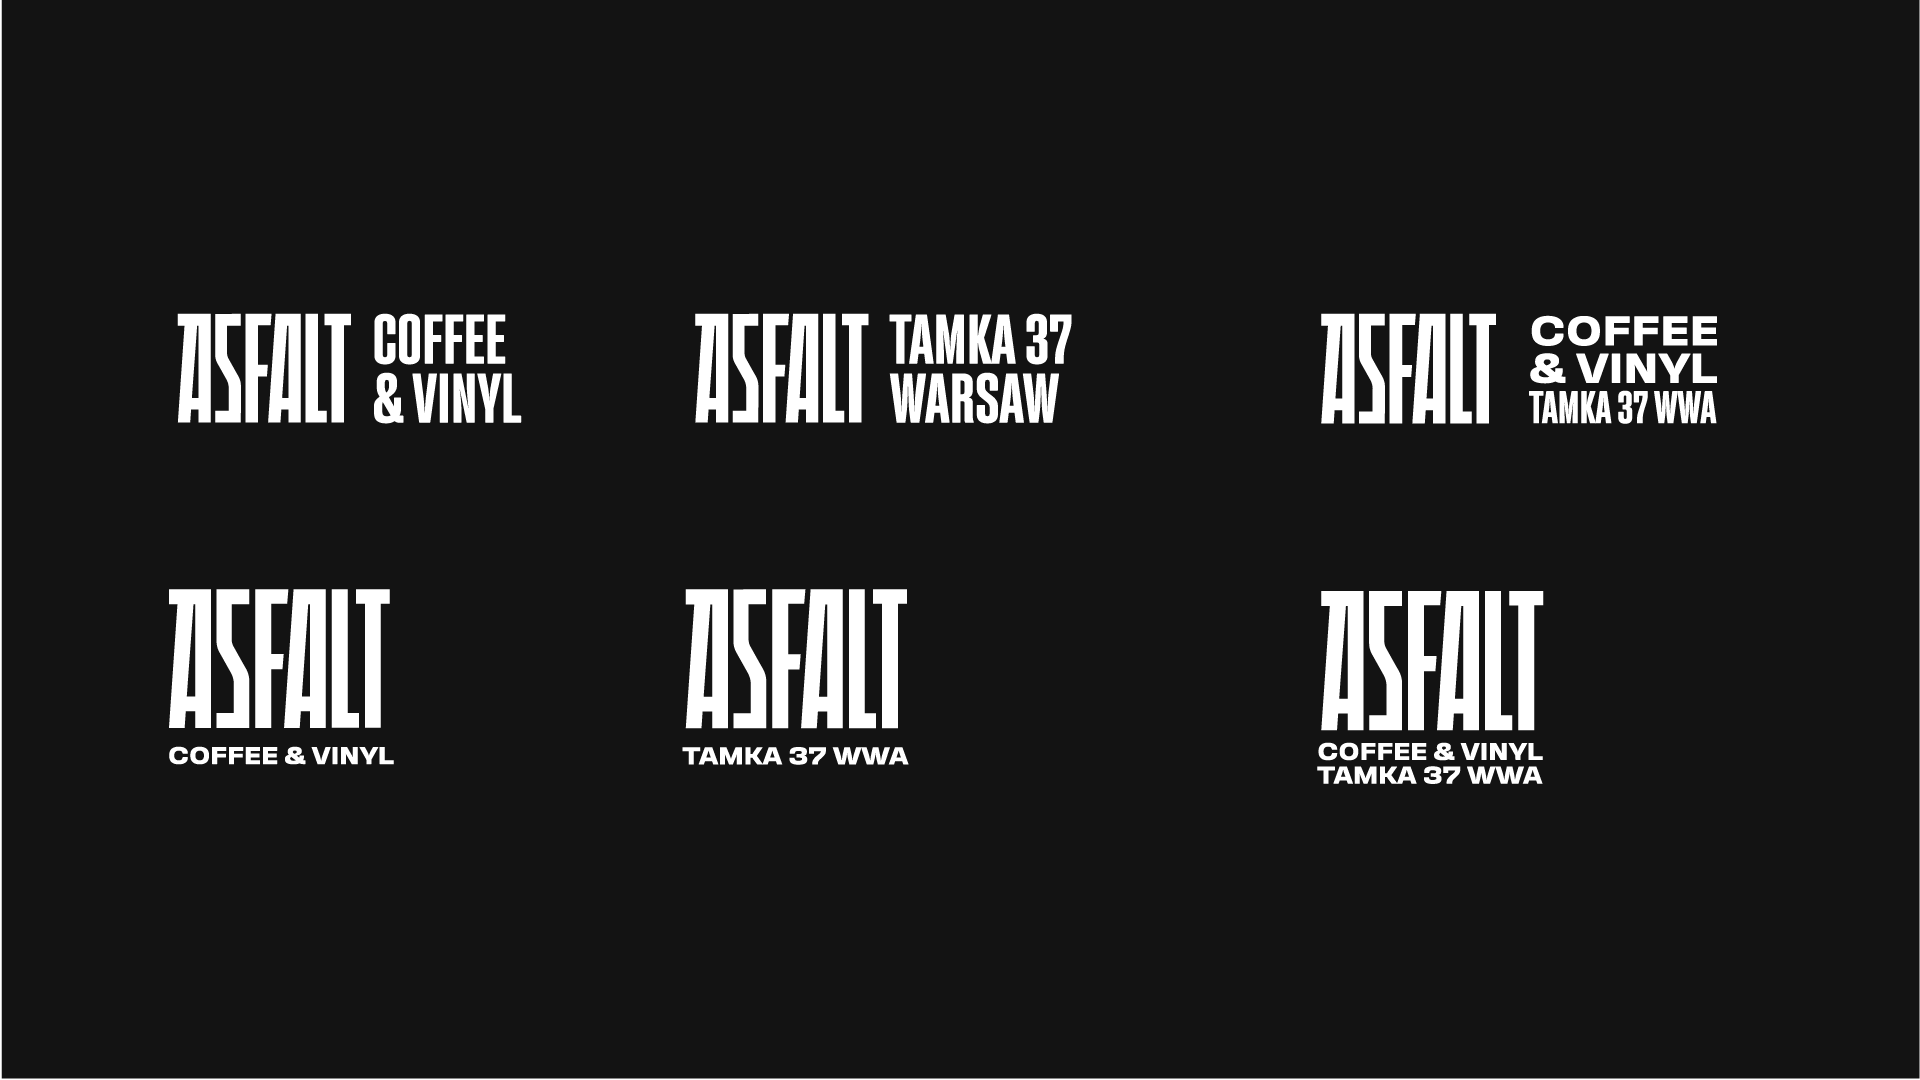 Asfalt咖啡馆品牌全案logo设计